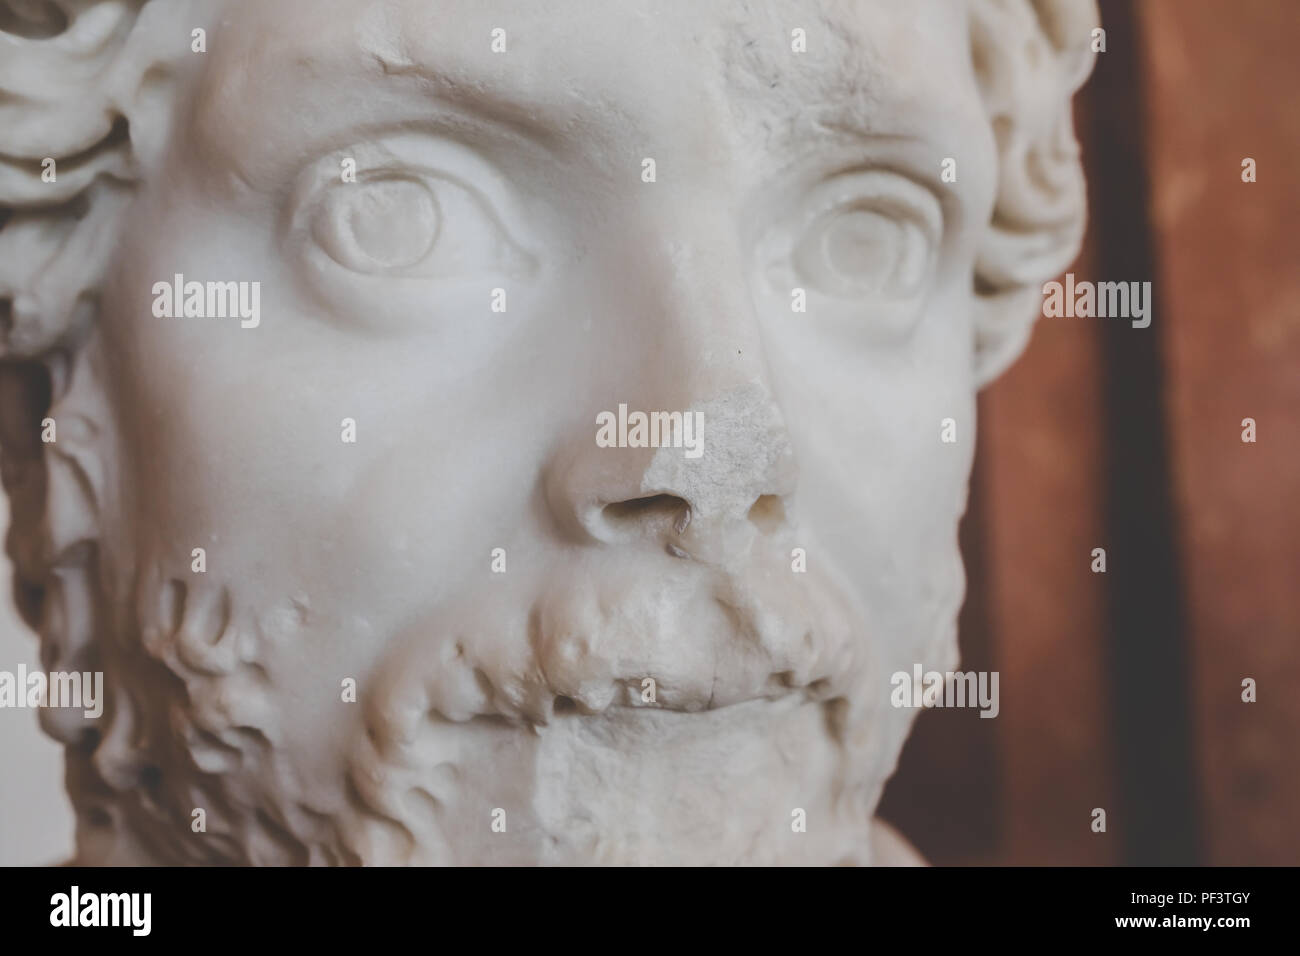 Sculpture d'un visage brisé mans au Louvre musée d'art à Paris - Août 2018 Banque D'Images